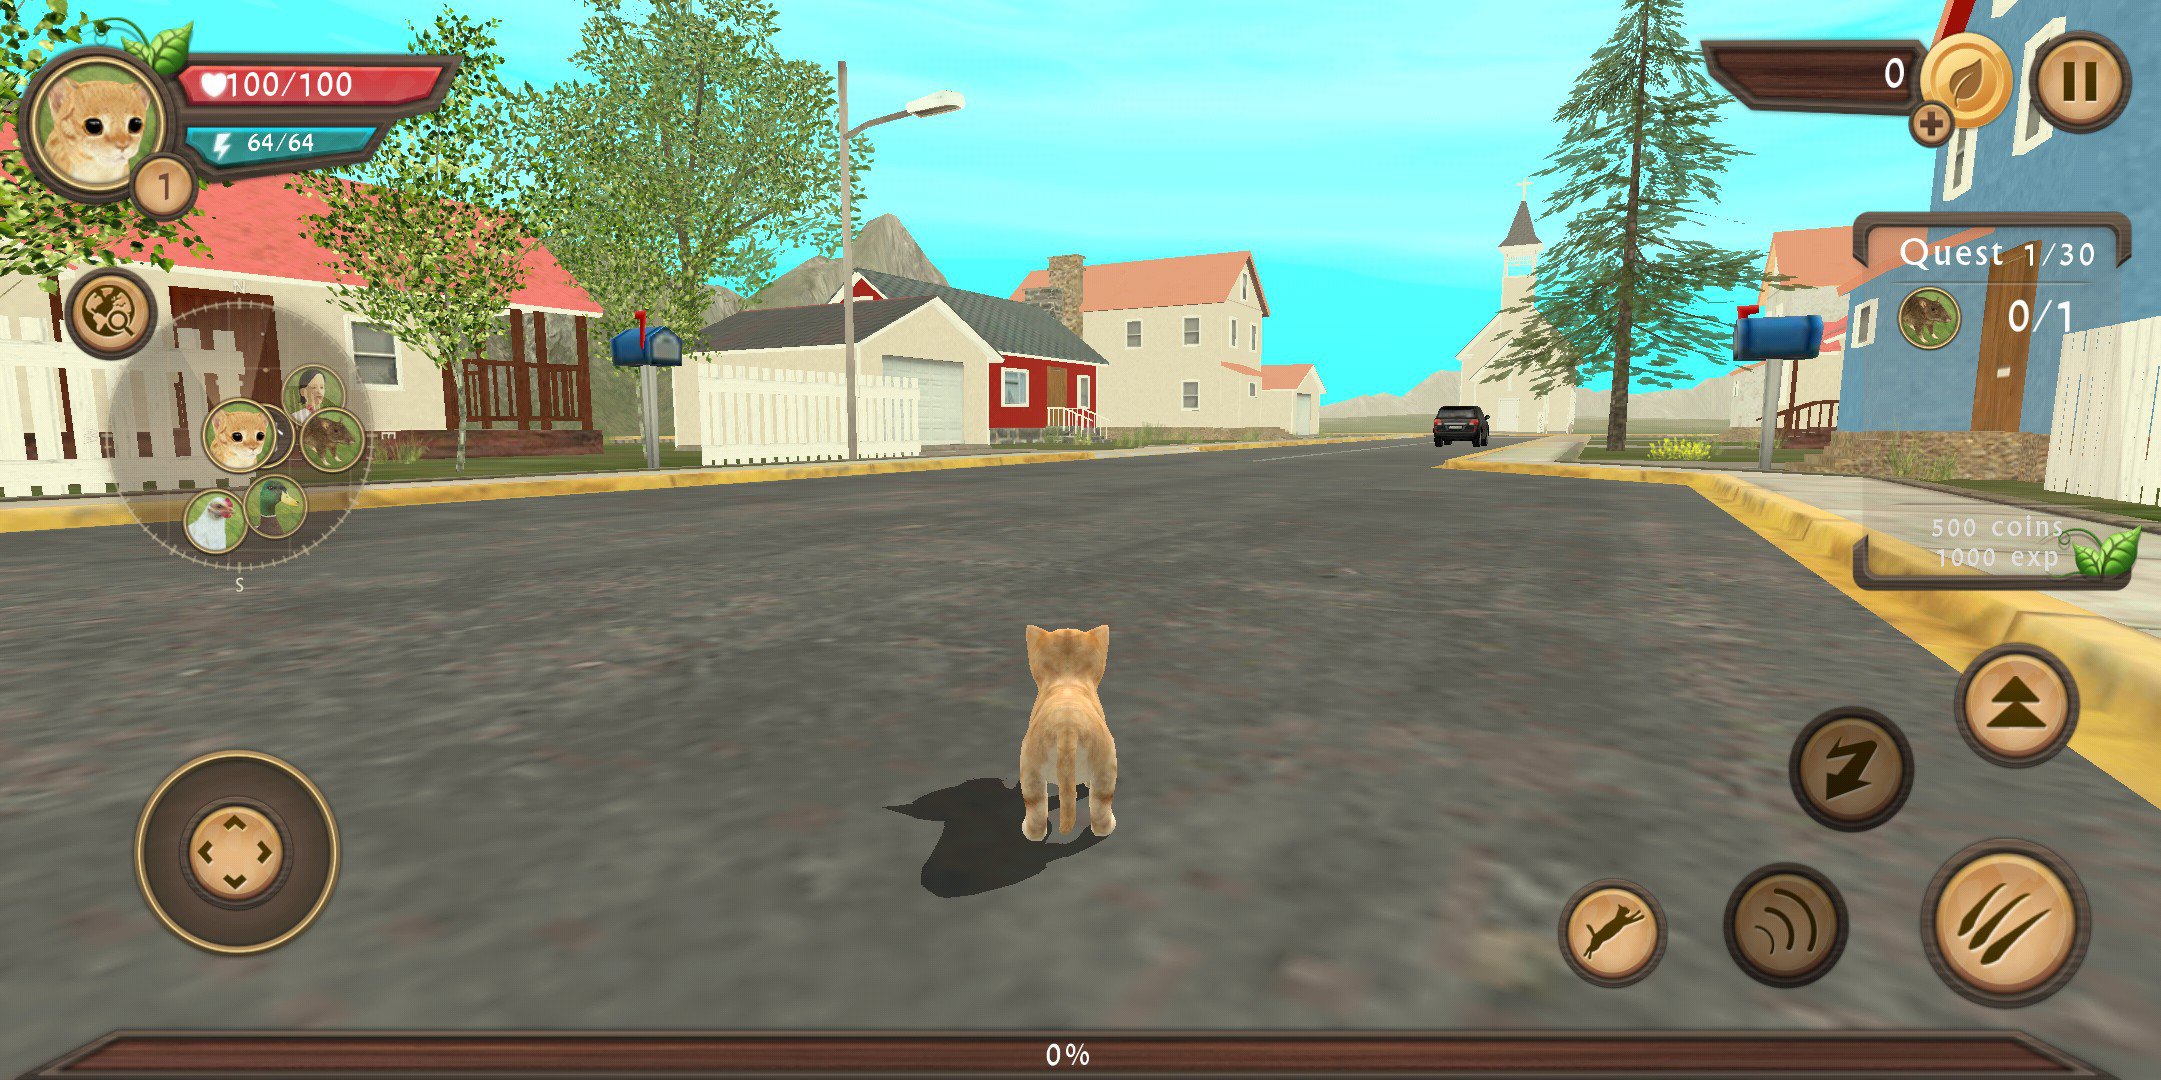 jogo Simulador de gato, cat simulator, joguinho do gato infantil